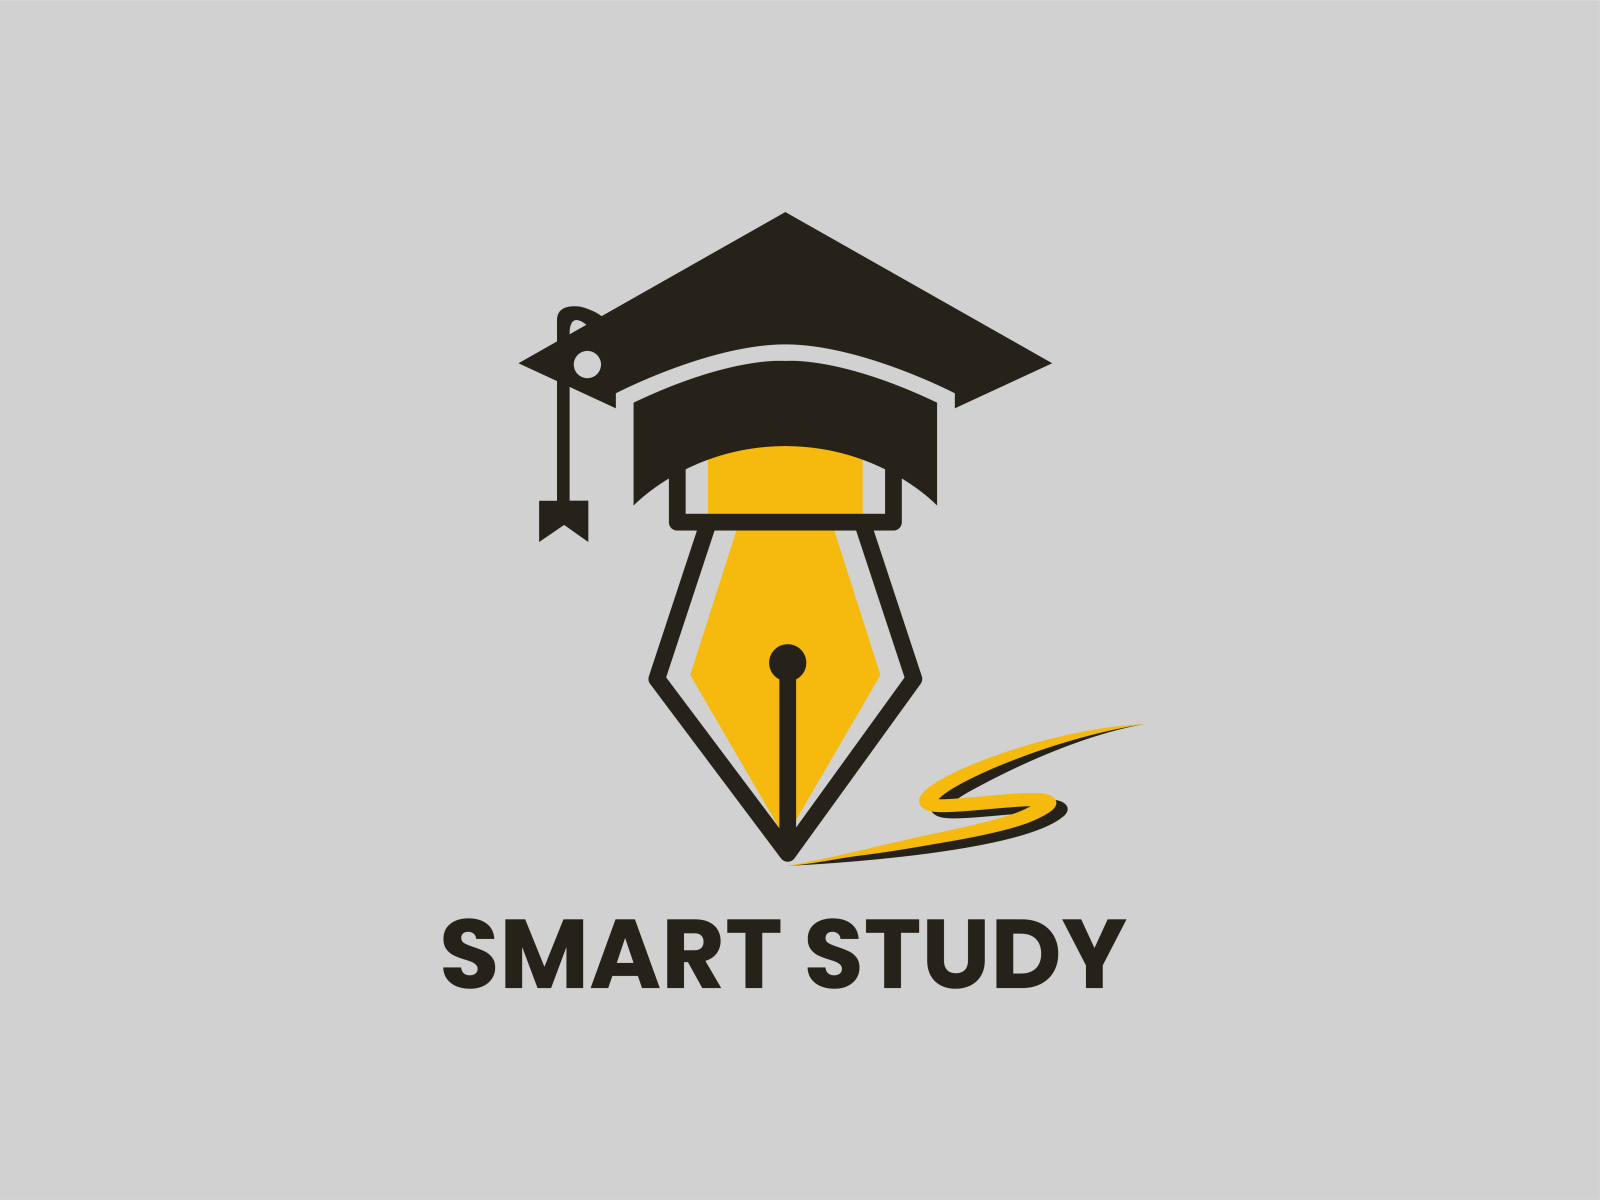 Share more than 64 smart study logo - ceg.edu.vn